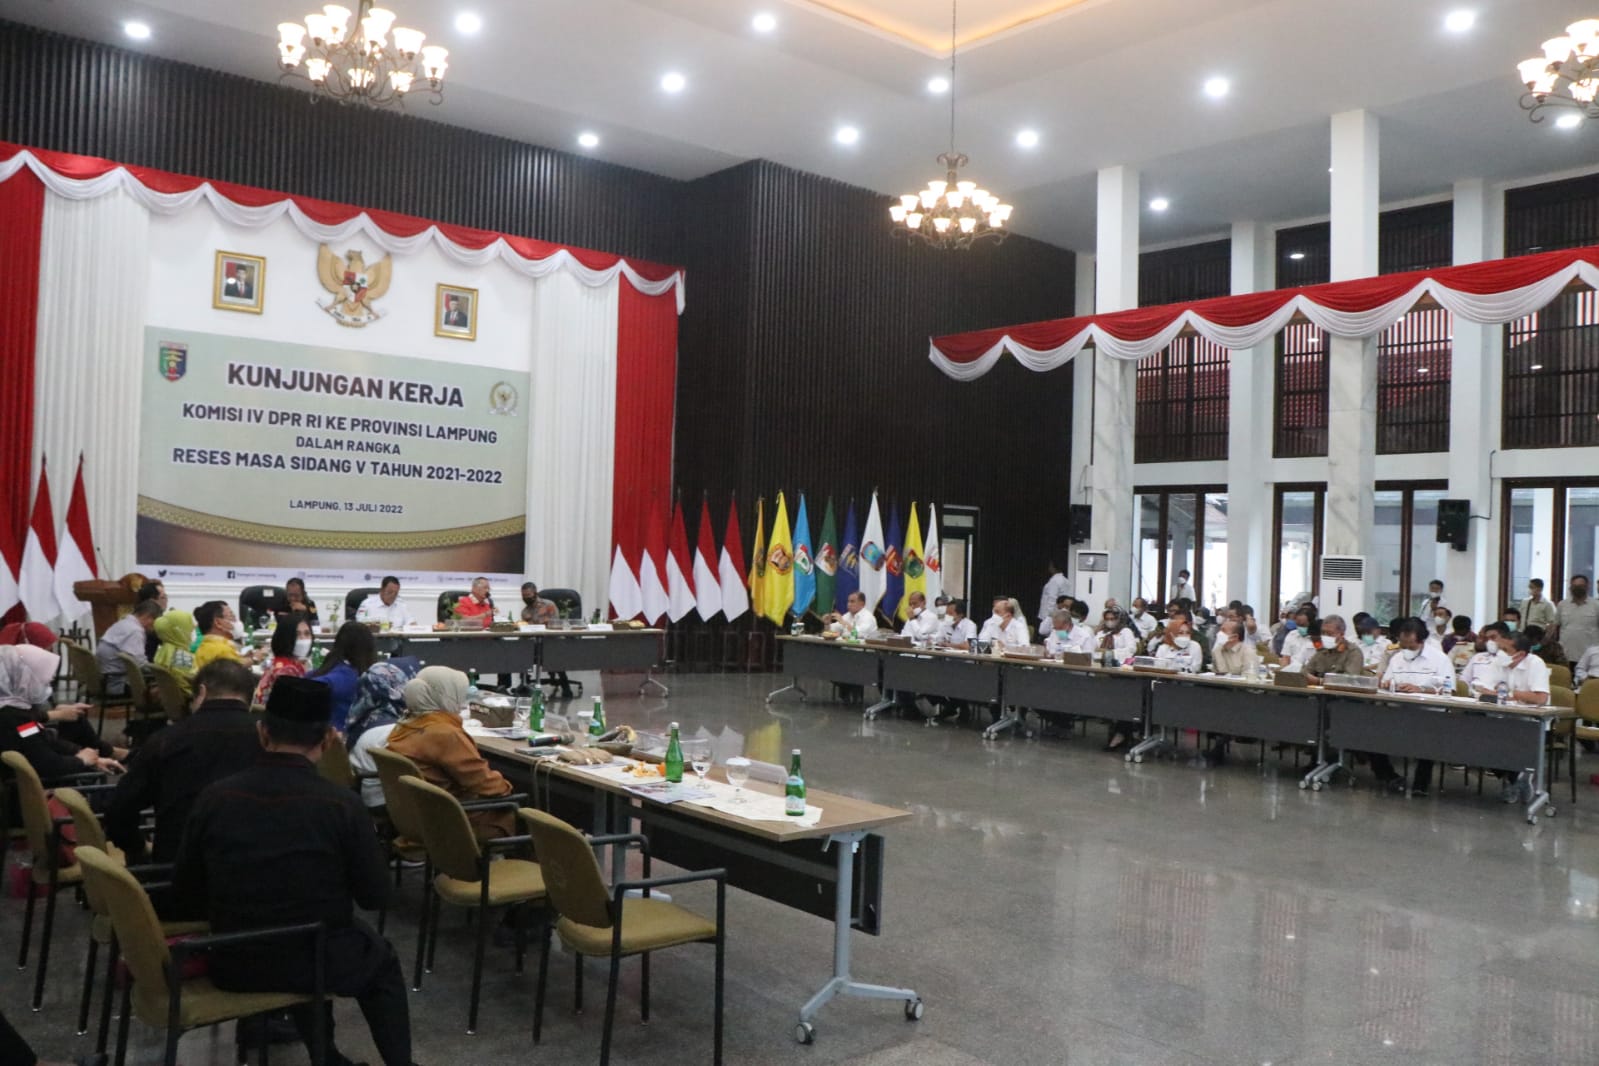 Komisi IV DPR RI Minta BPTP Lampung Membantu Penguatan Kerjasama Inovasi Budidaya Lada untuk Mendukung Revitalisasi